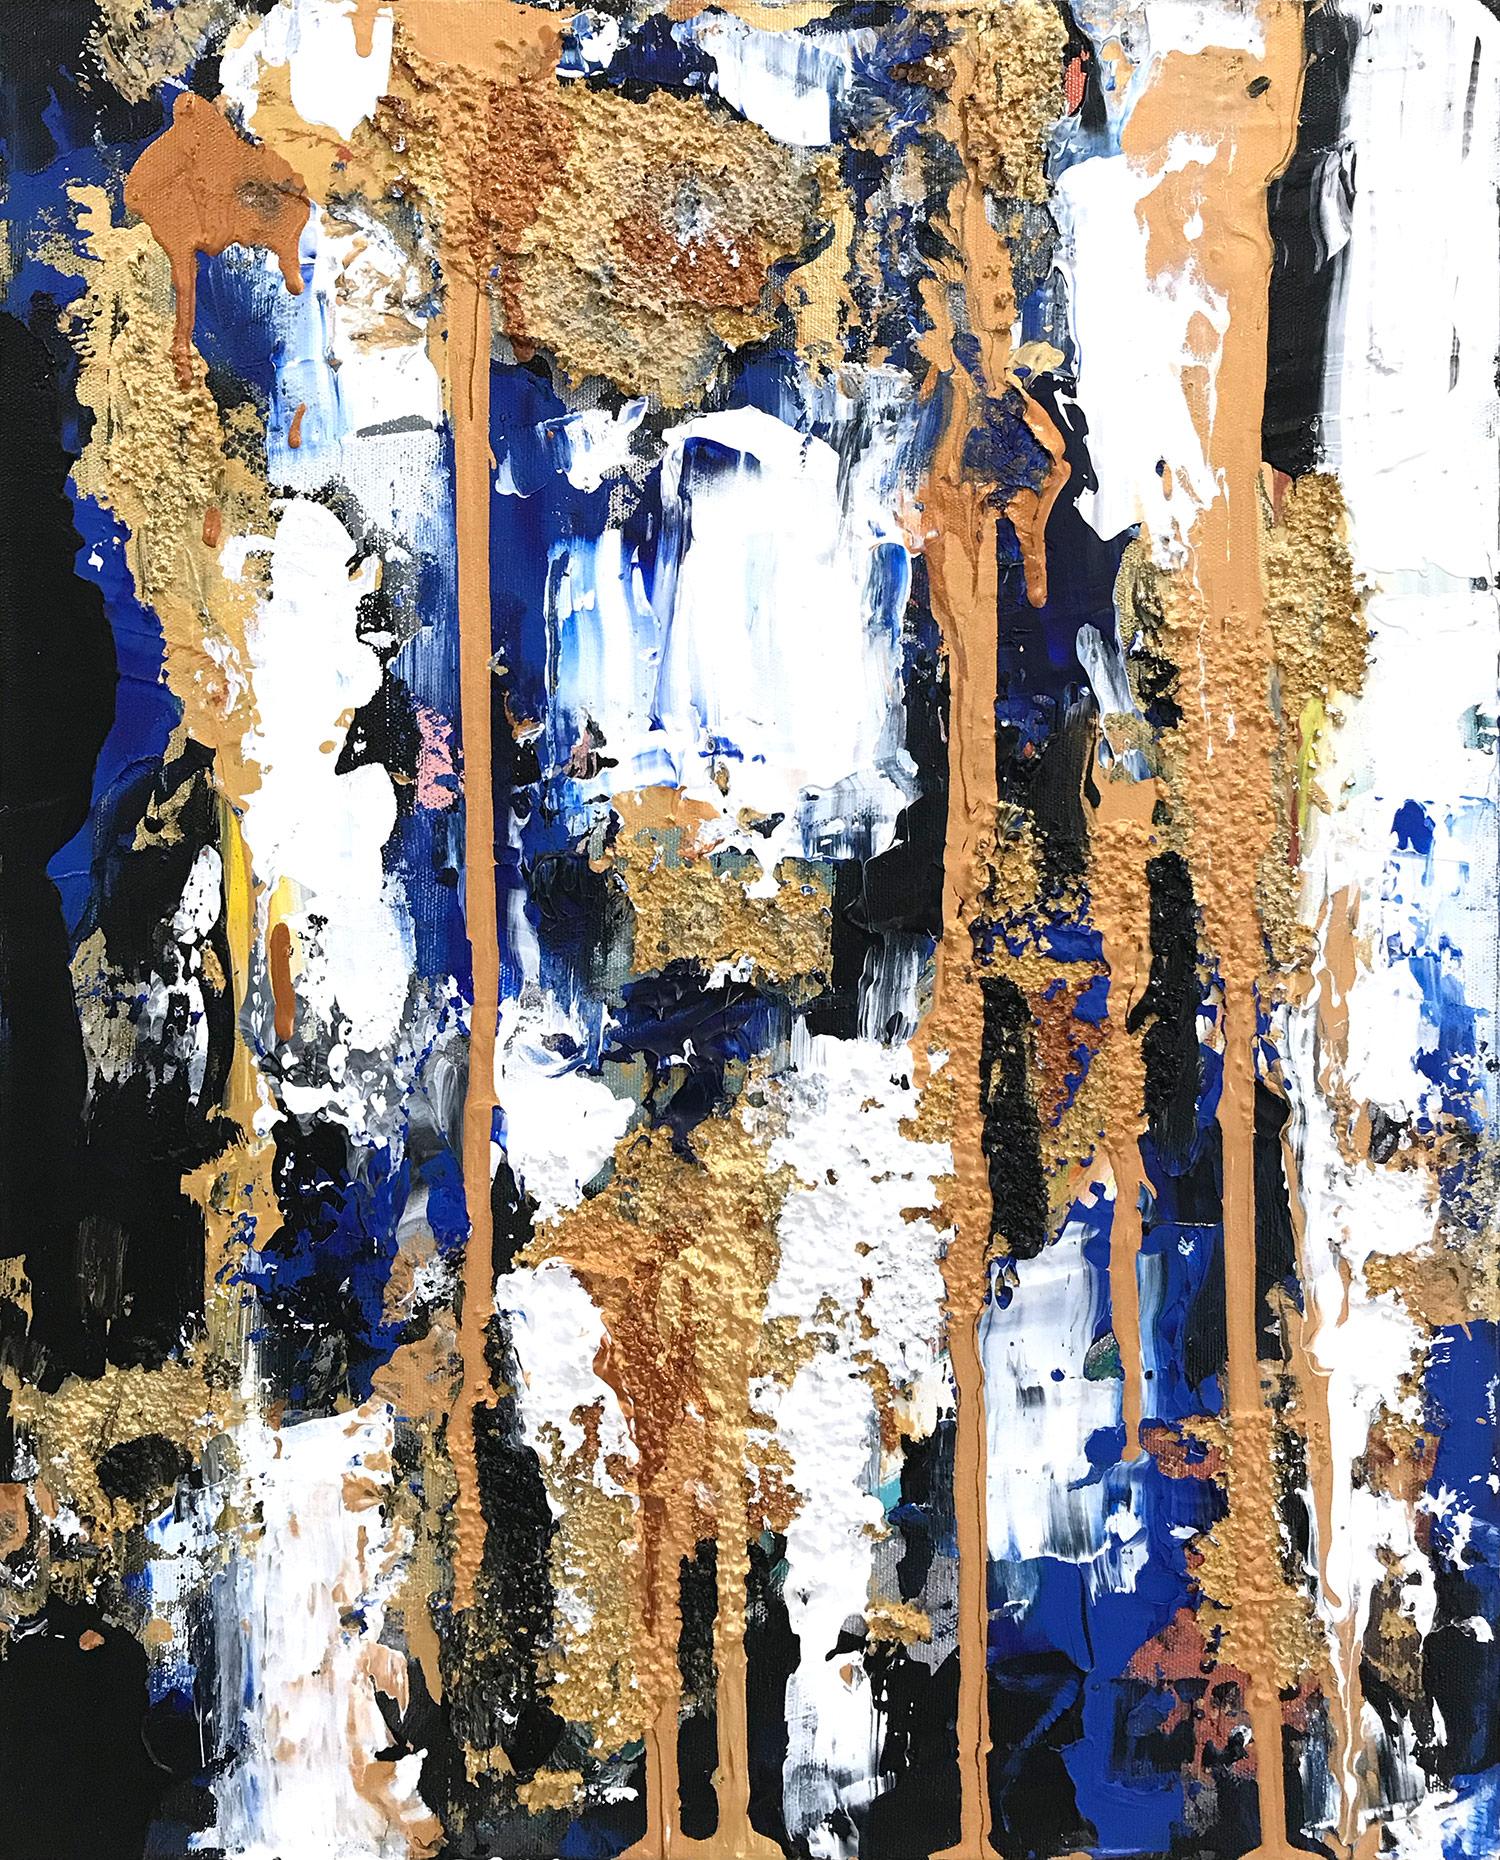 Cindy Shaoul Abstract Painting – "Beyond Blue" Buntes zeitgenössisches Öl- und Mischtechnik-Gemälde auf Leinwand